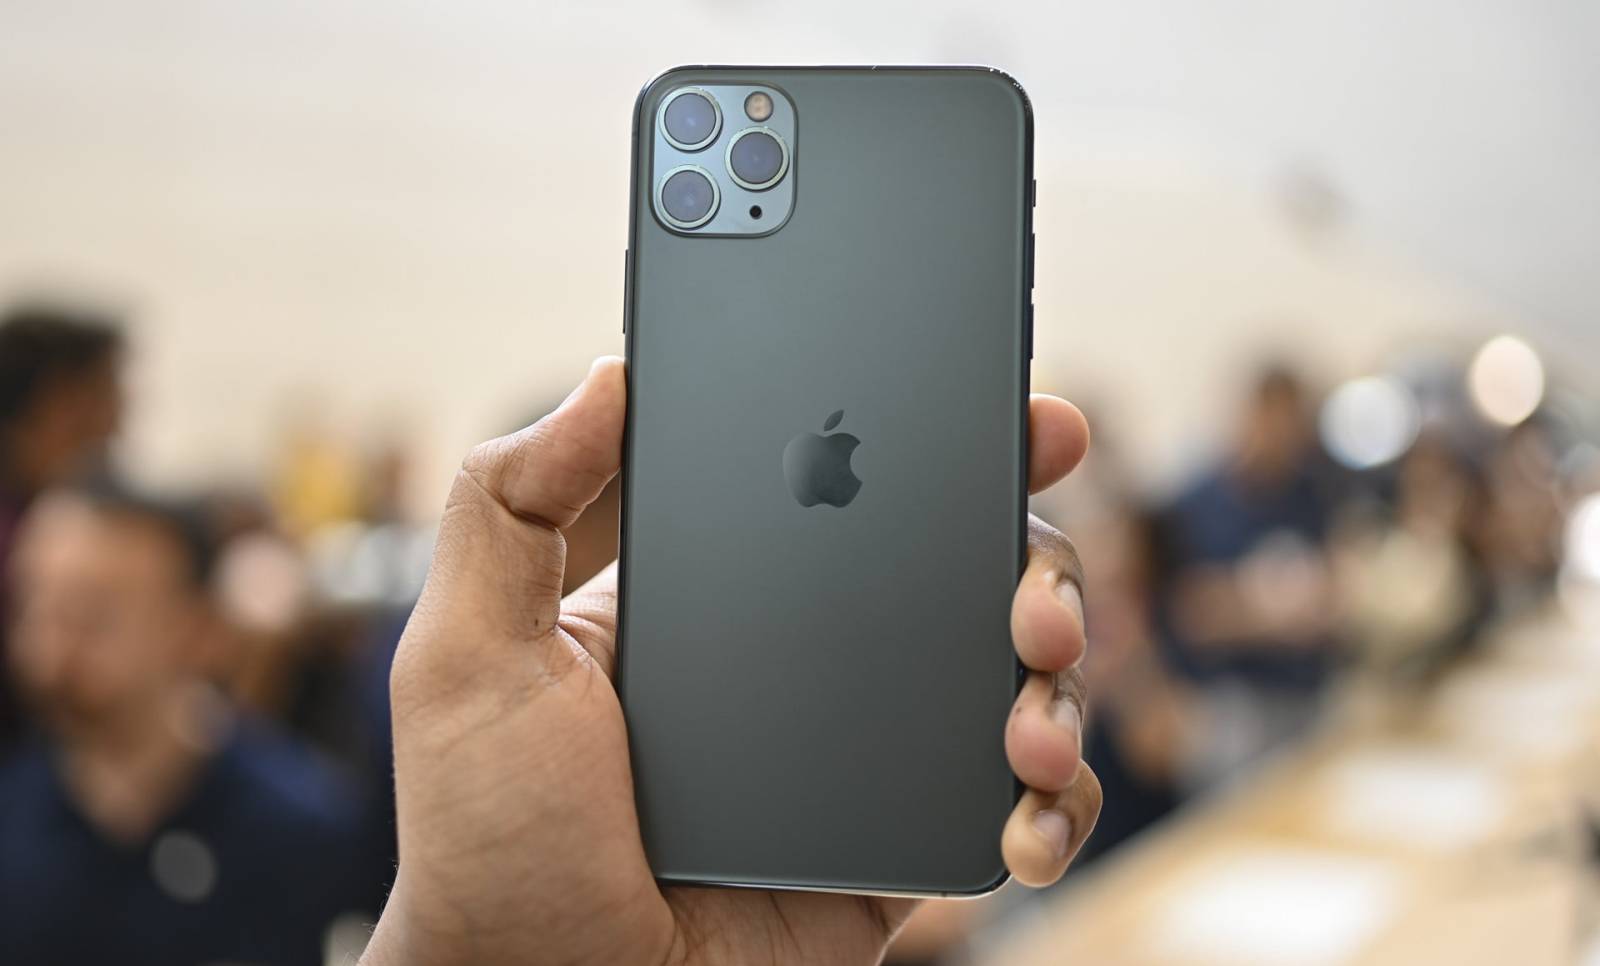 Apple rejestruje sprzedaż powyżej oczekiwań w przypadku iPhone’a z serii 11